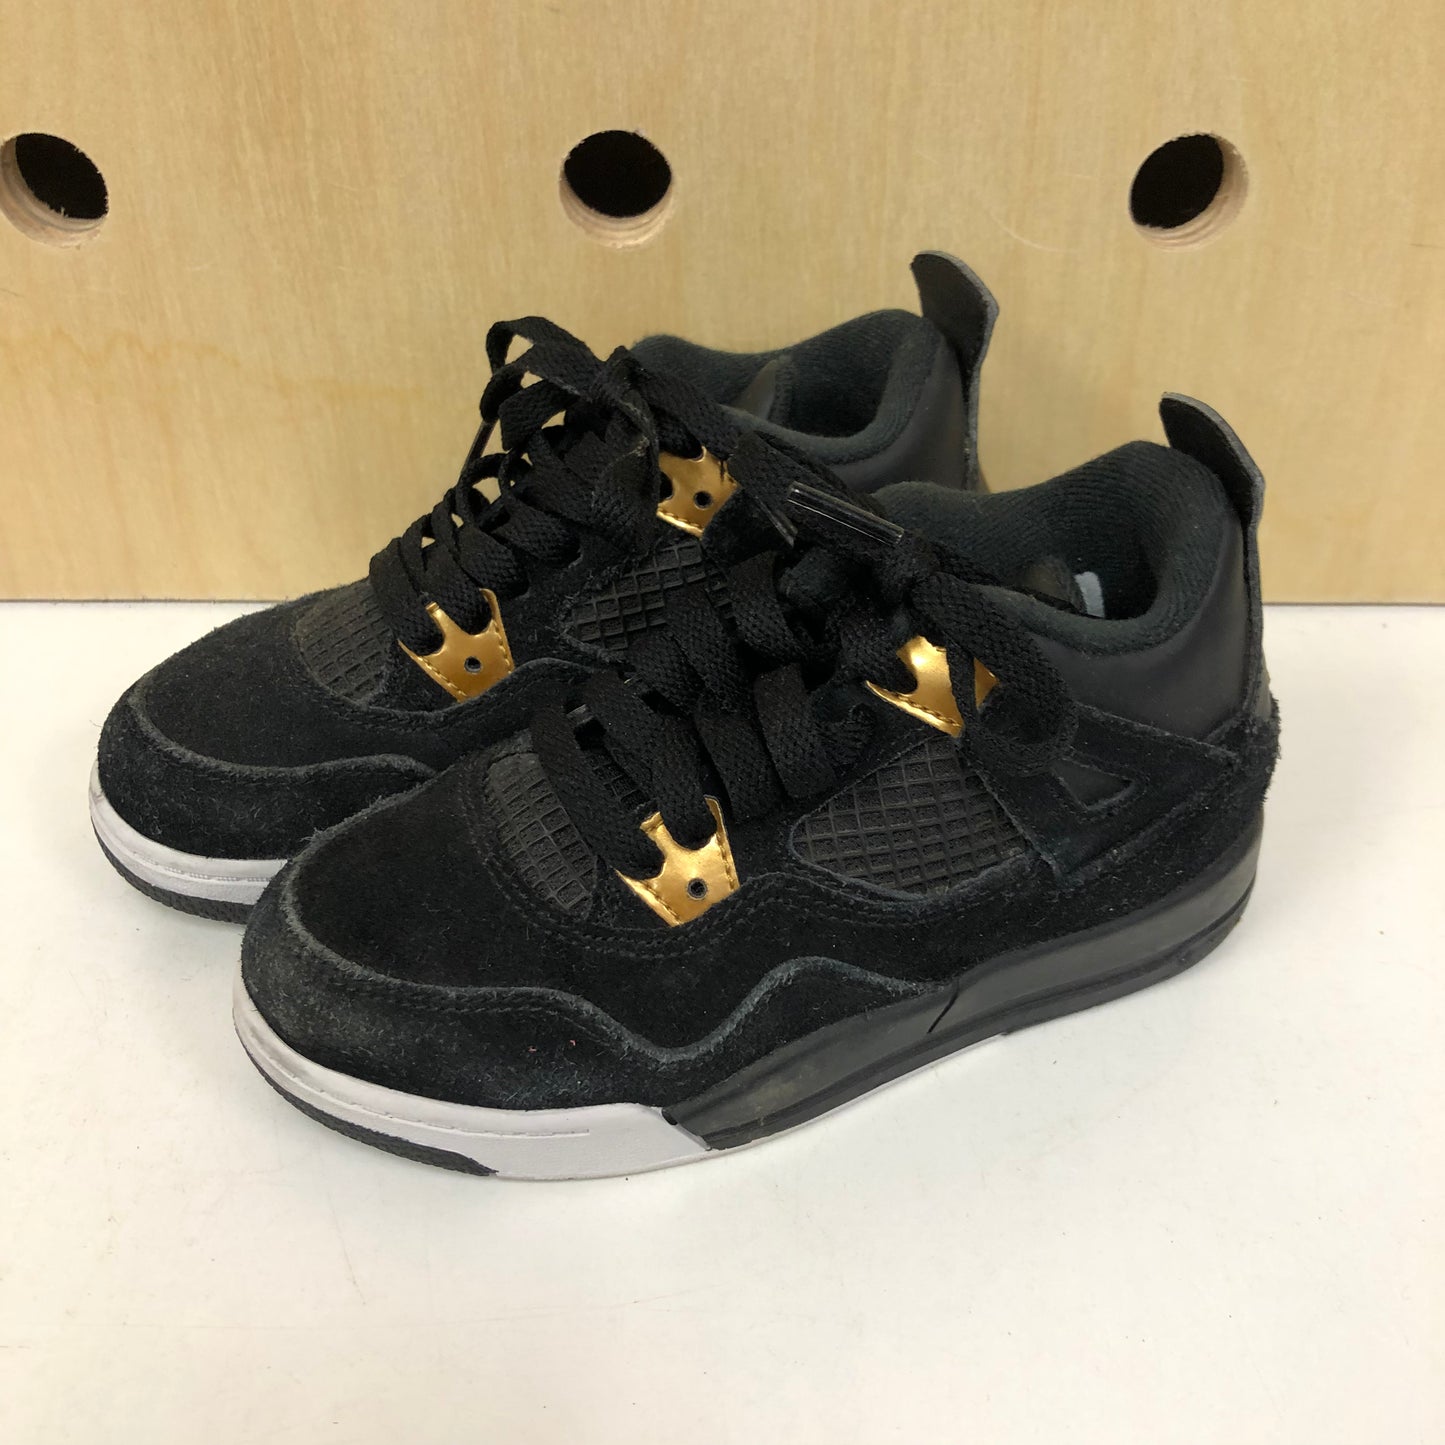 Black + Gold Jordans